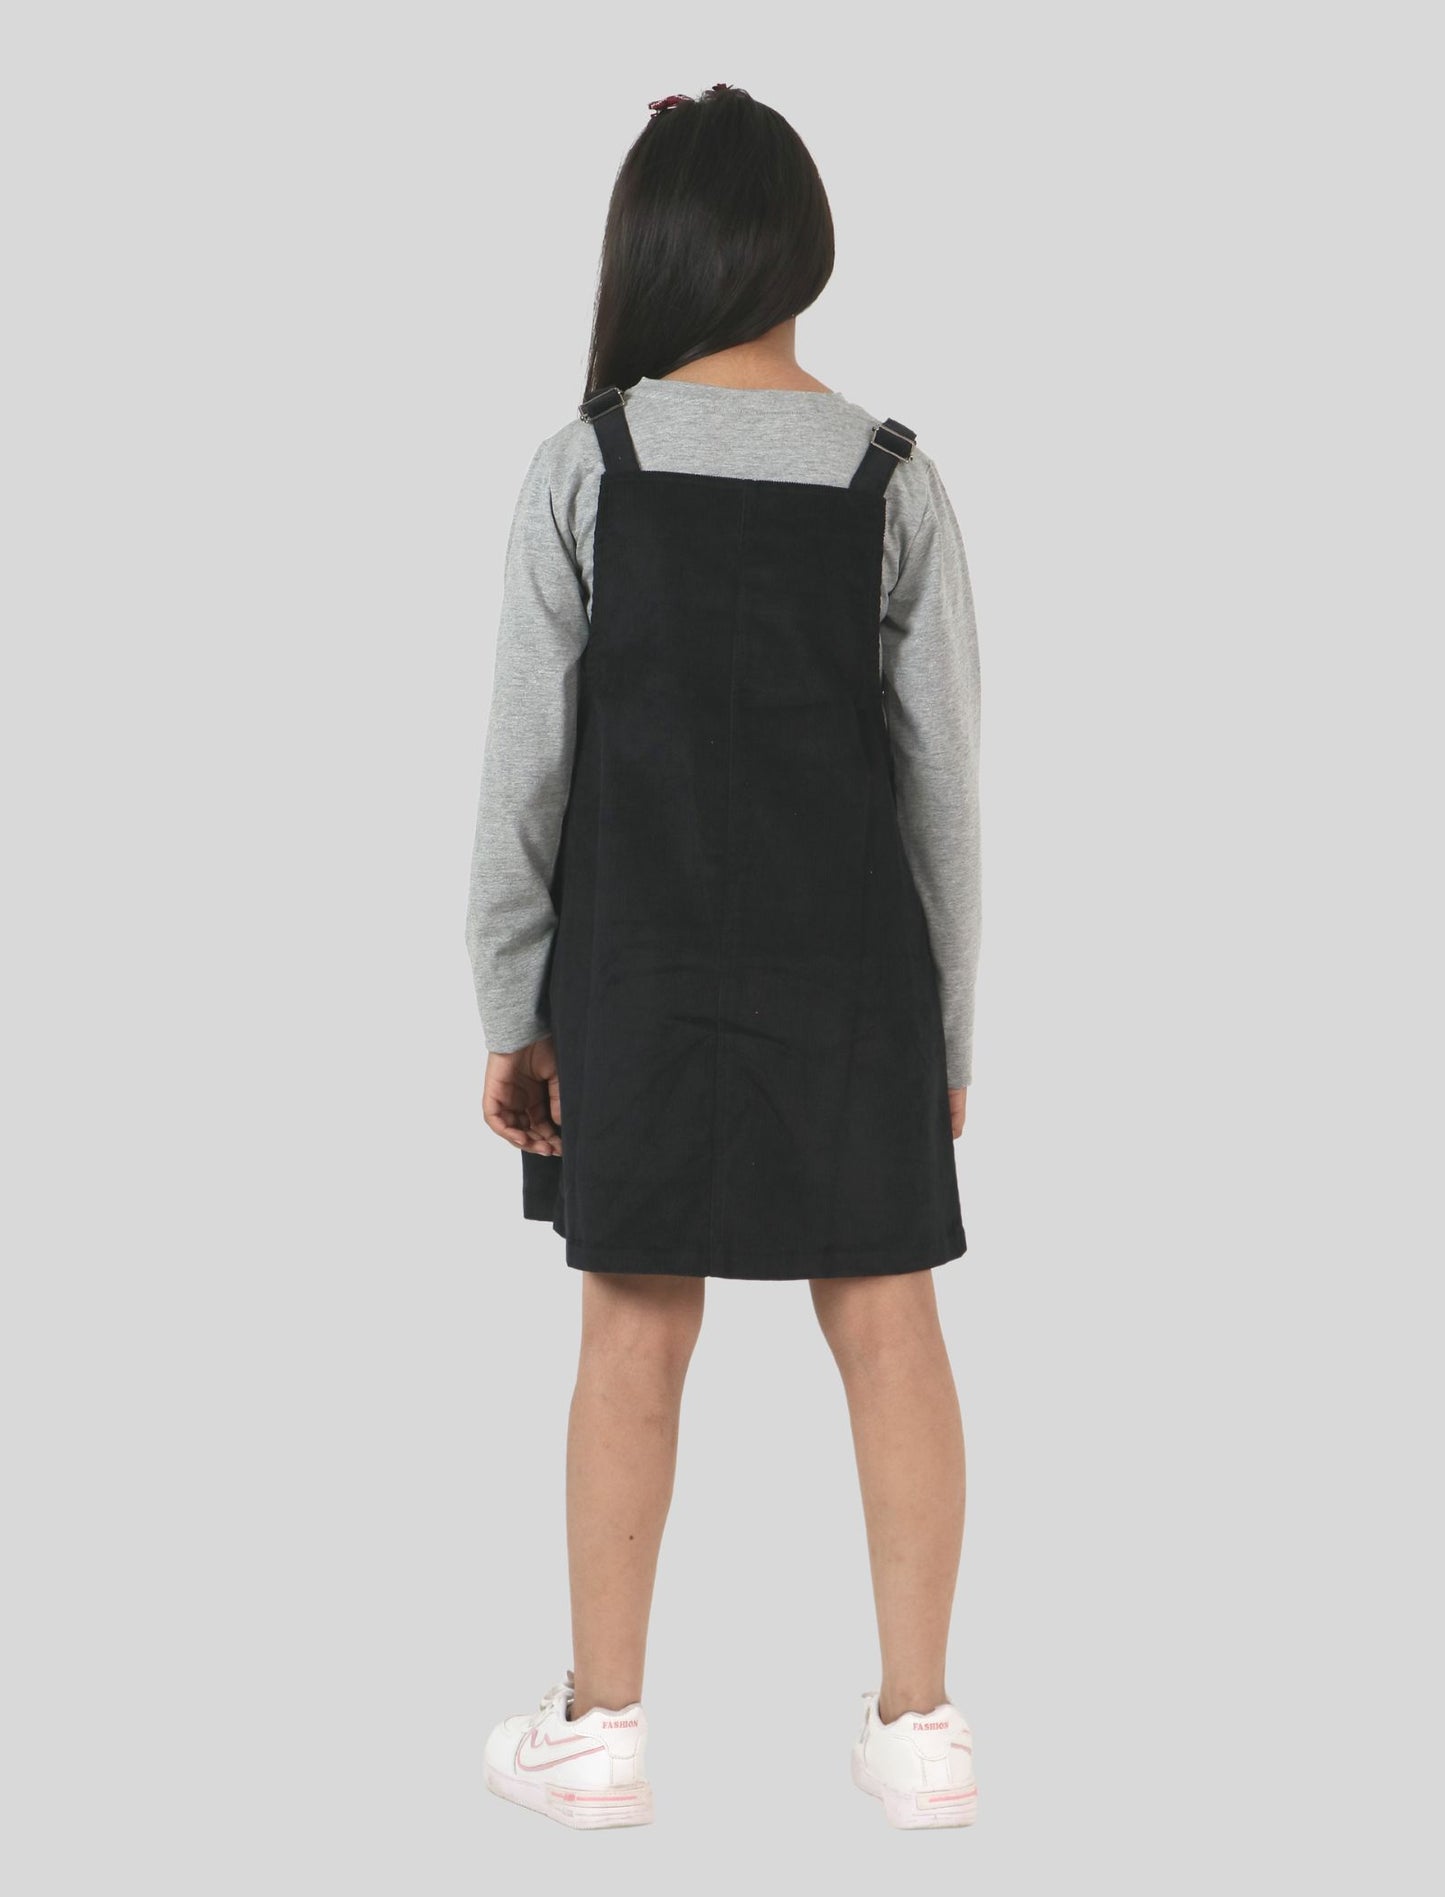 Girls Kids Corduroy Pinafore Dress (Black)